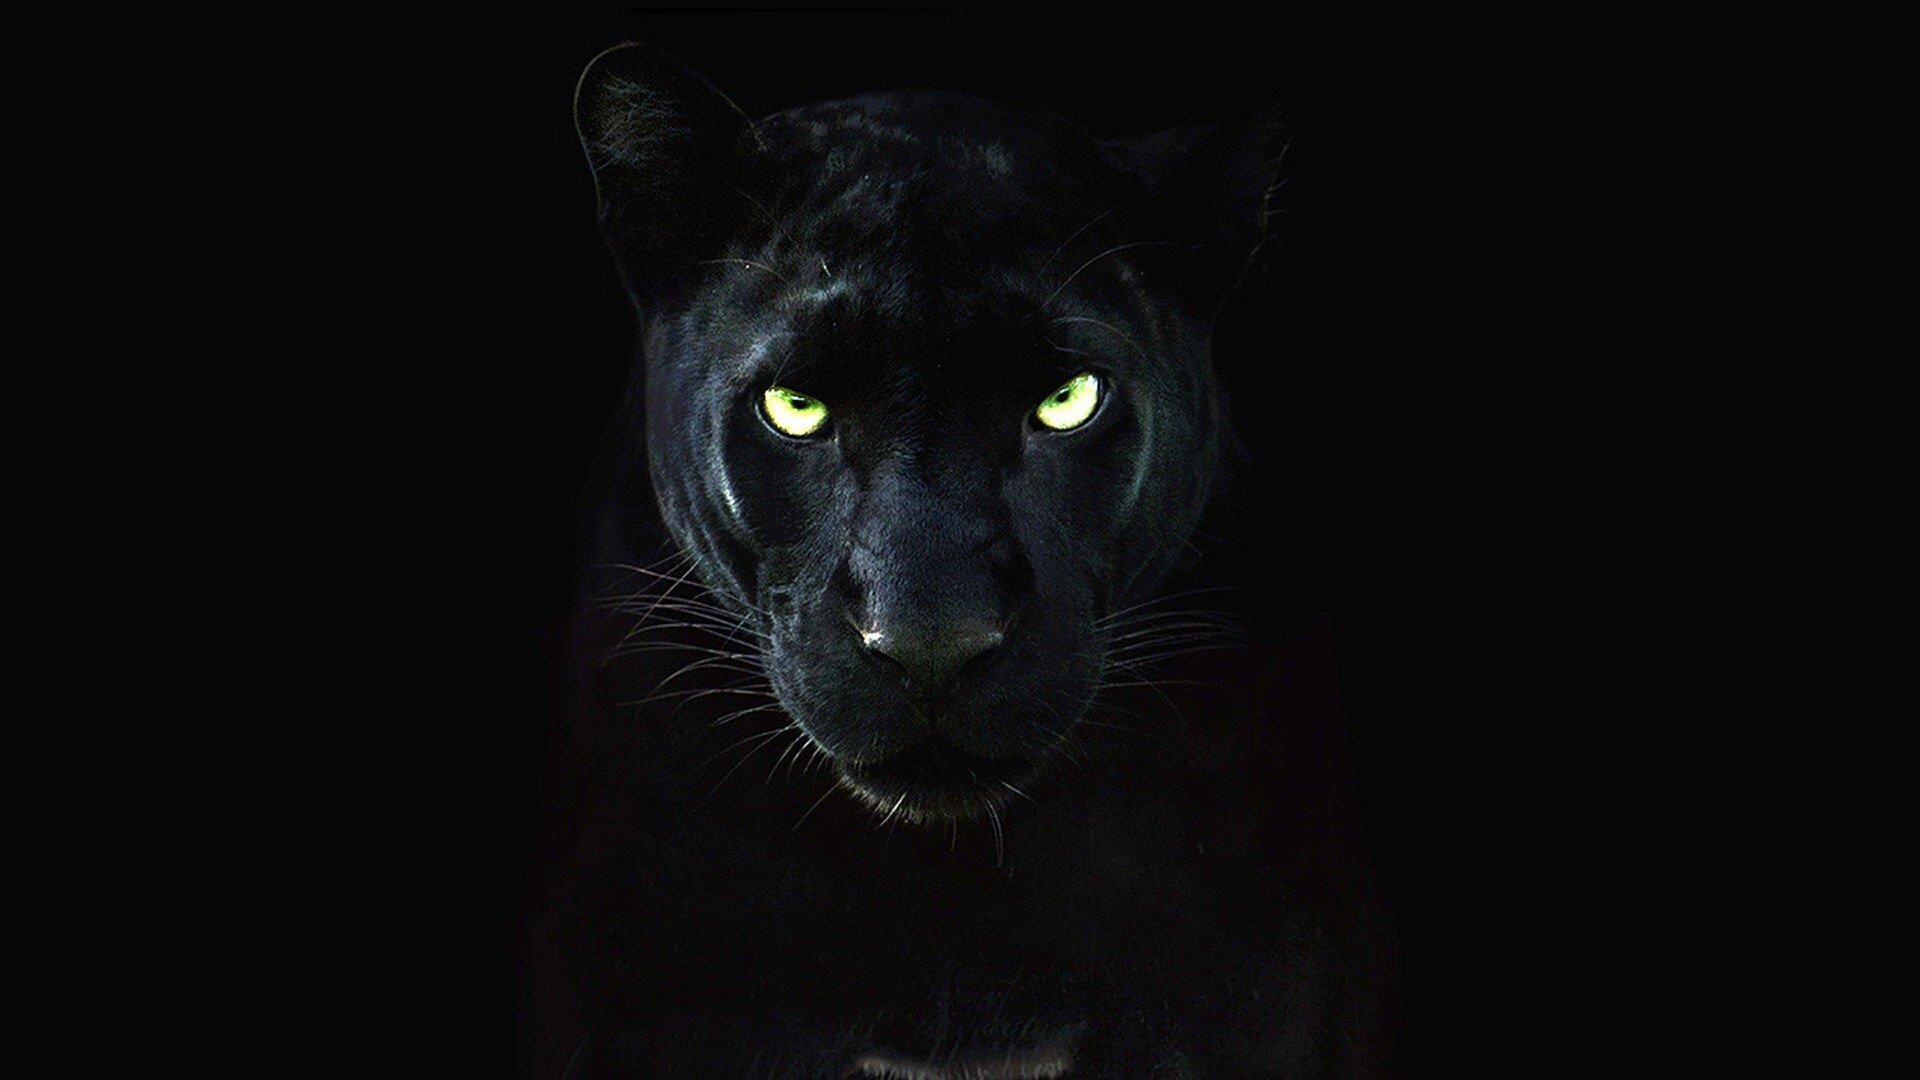 фанфик глаза пантеры светятся в ночи фото 8